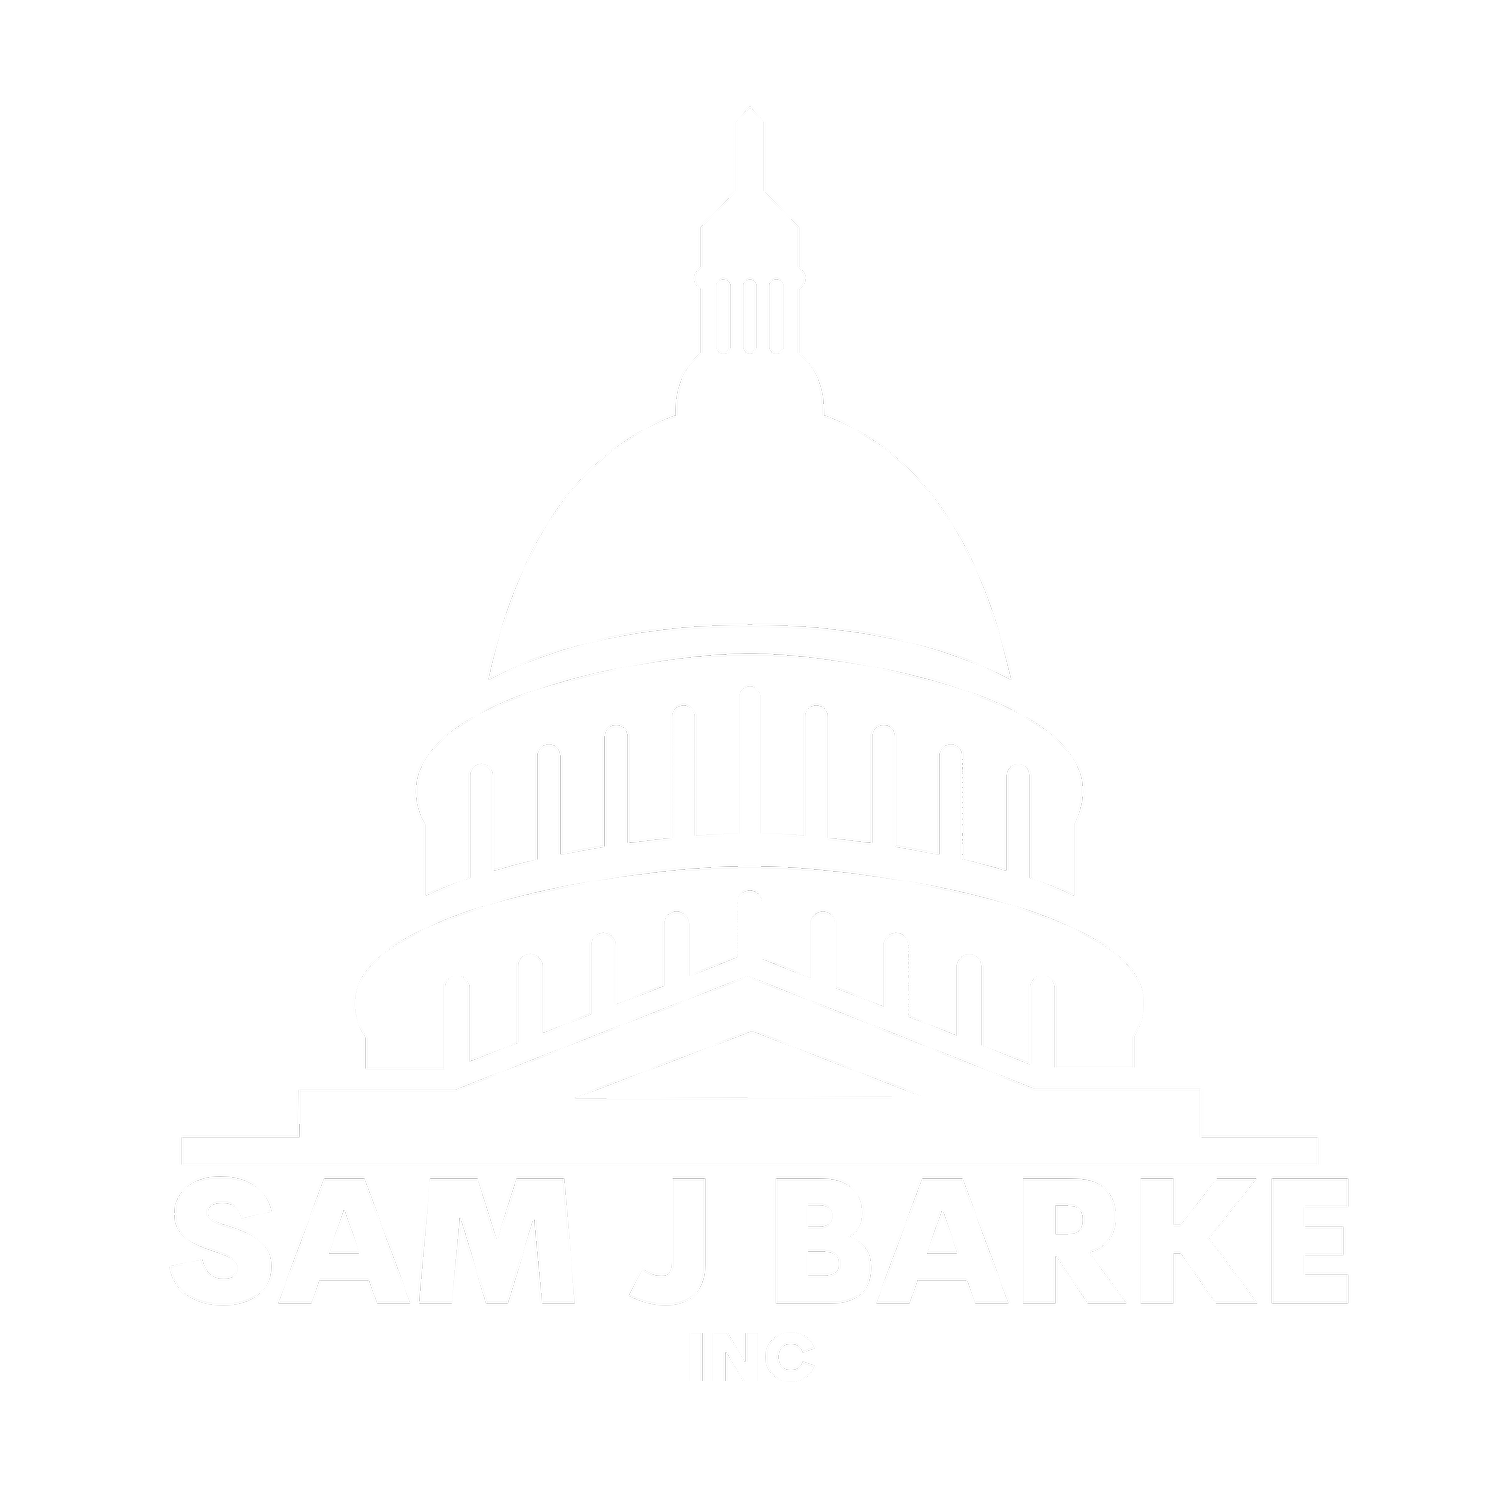 Sam J. Barke INC.